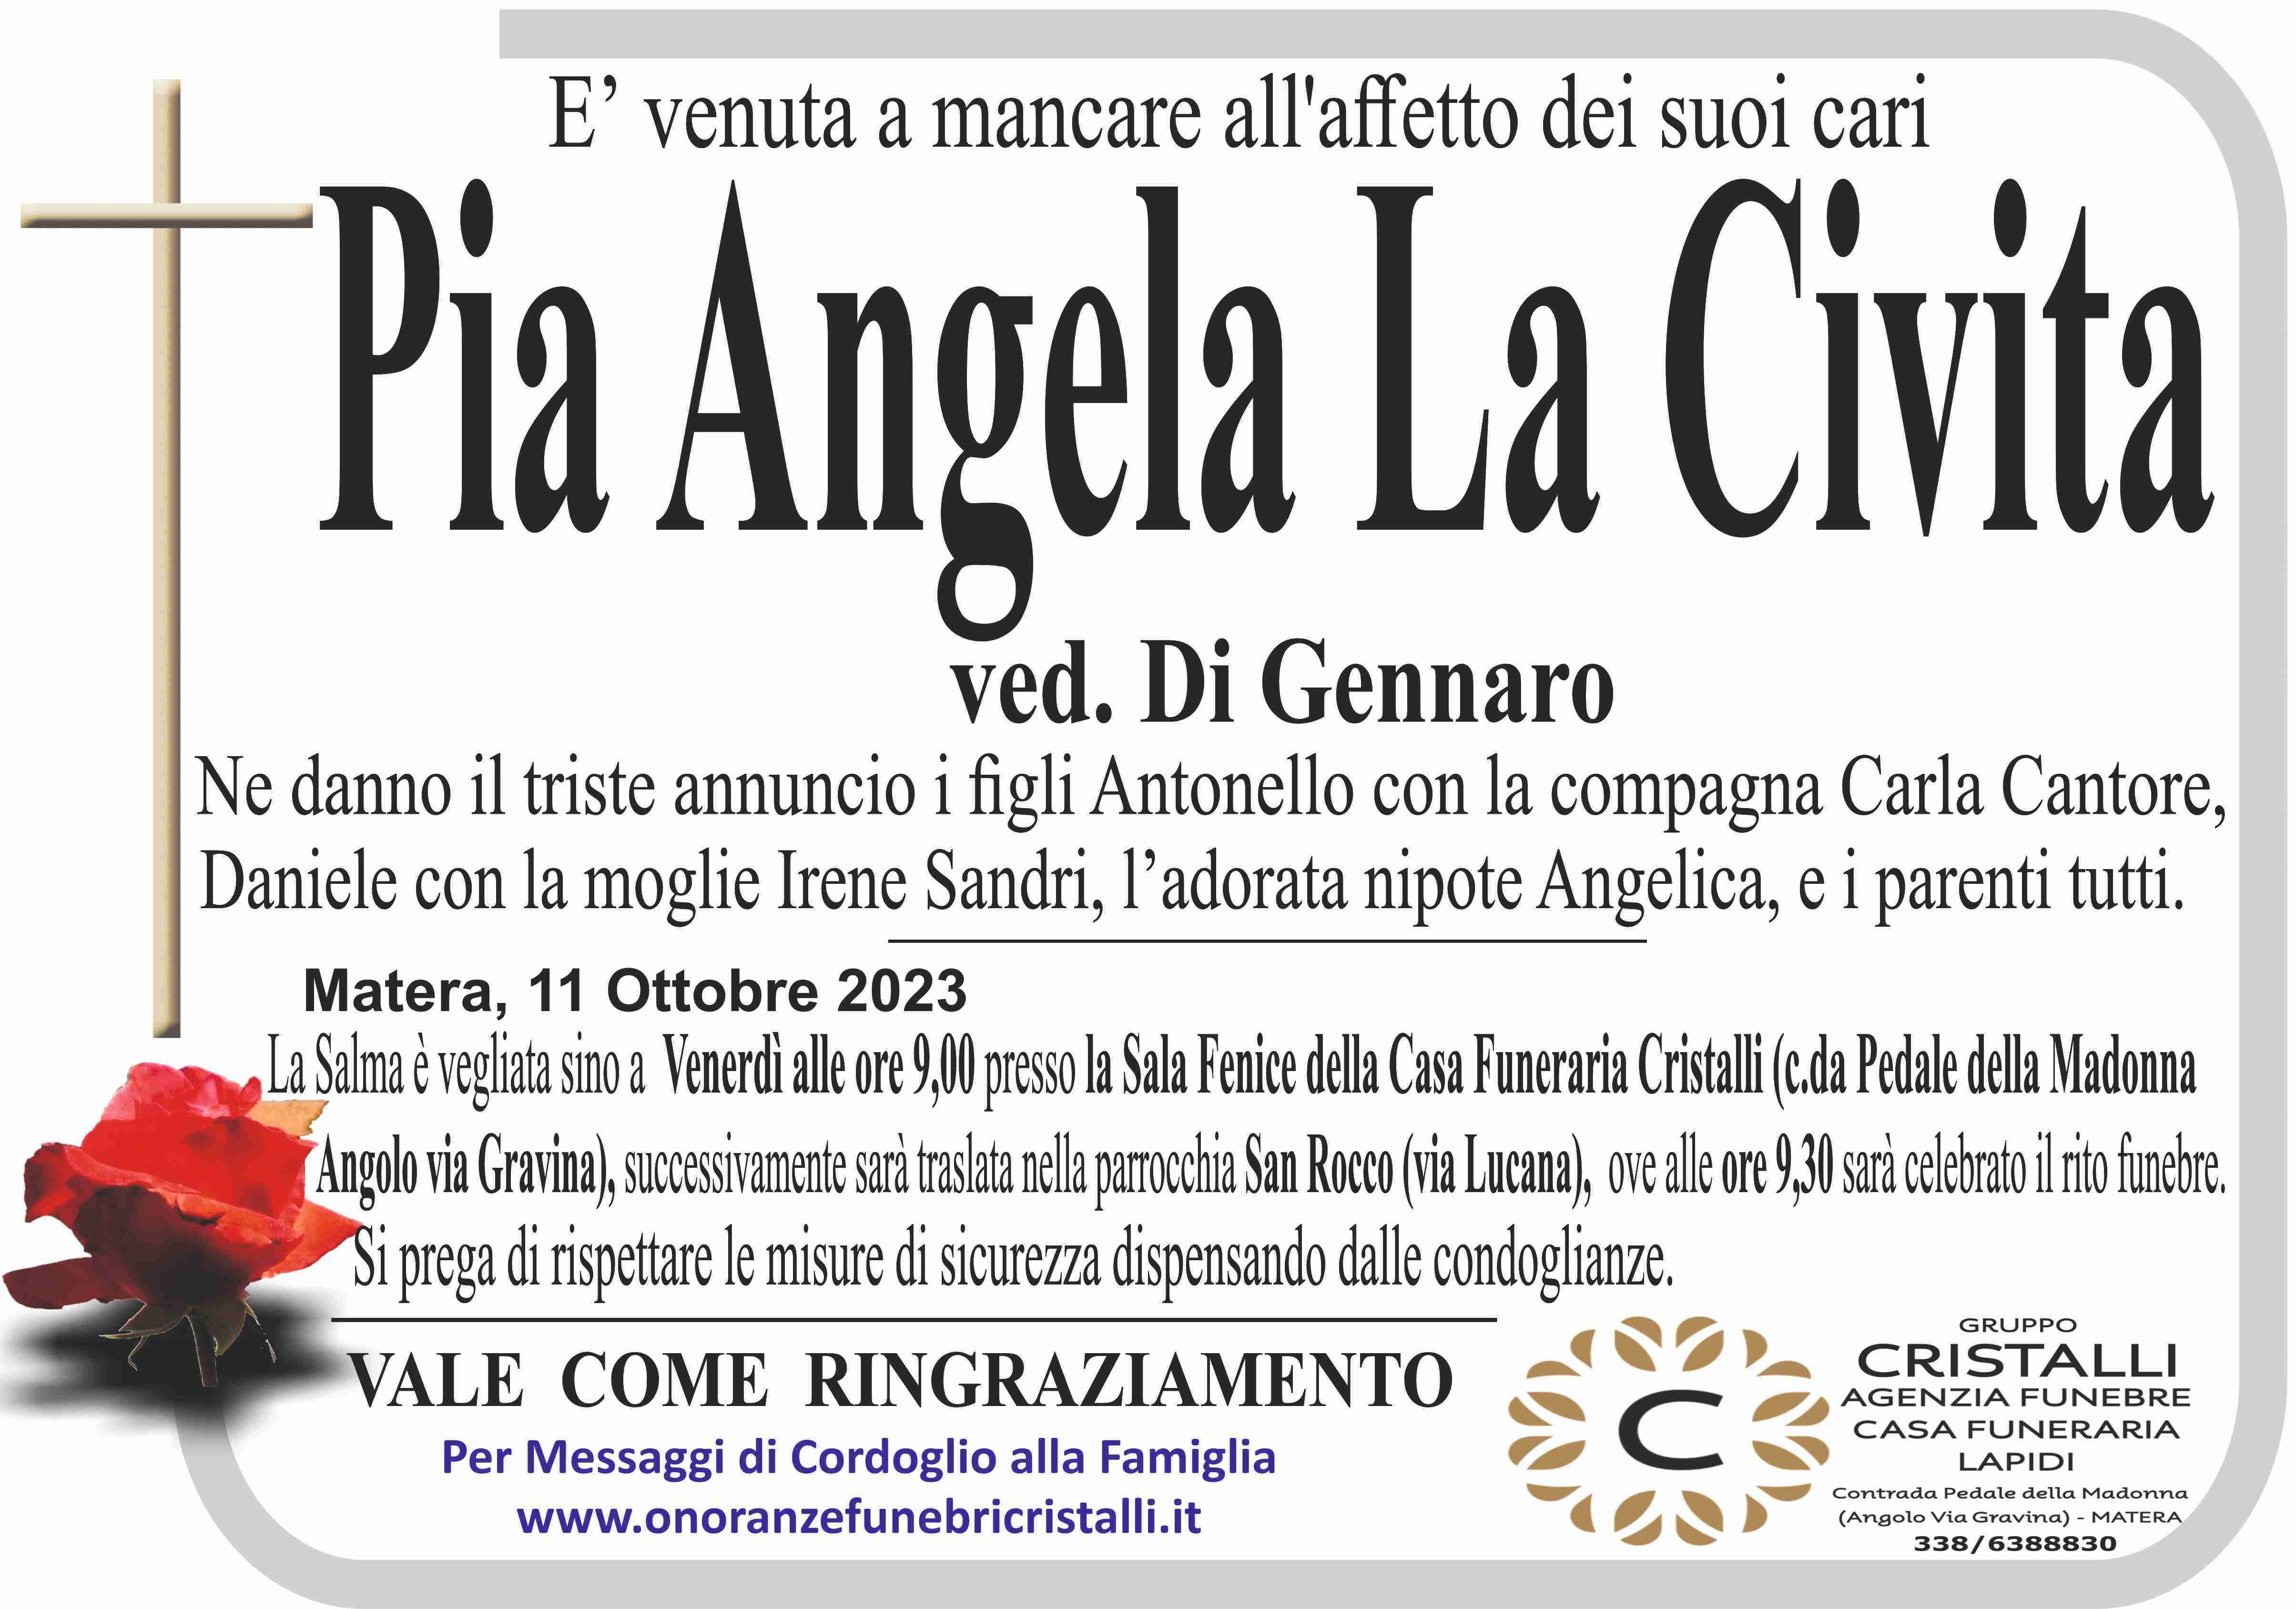 Pia Angela La Civita